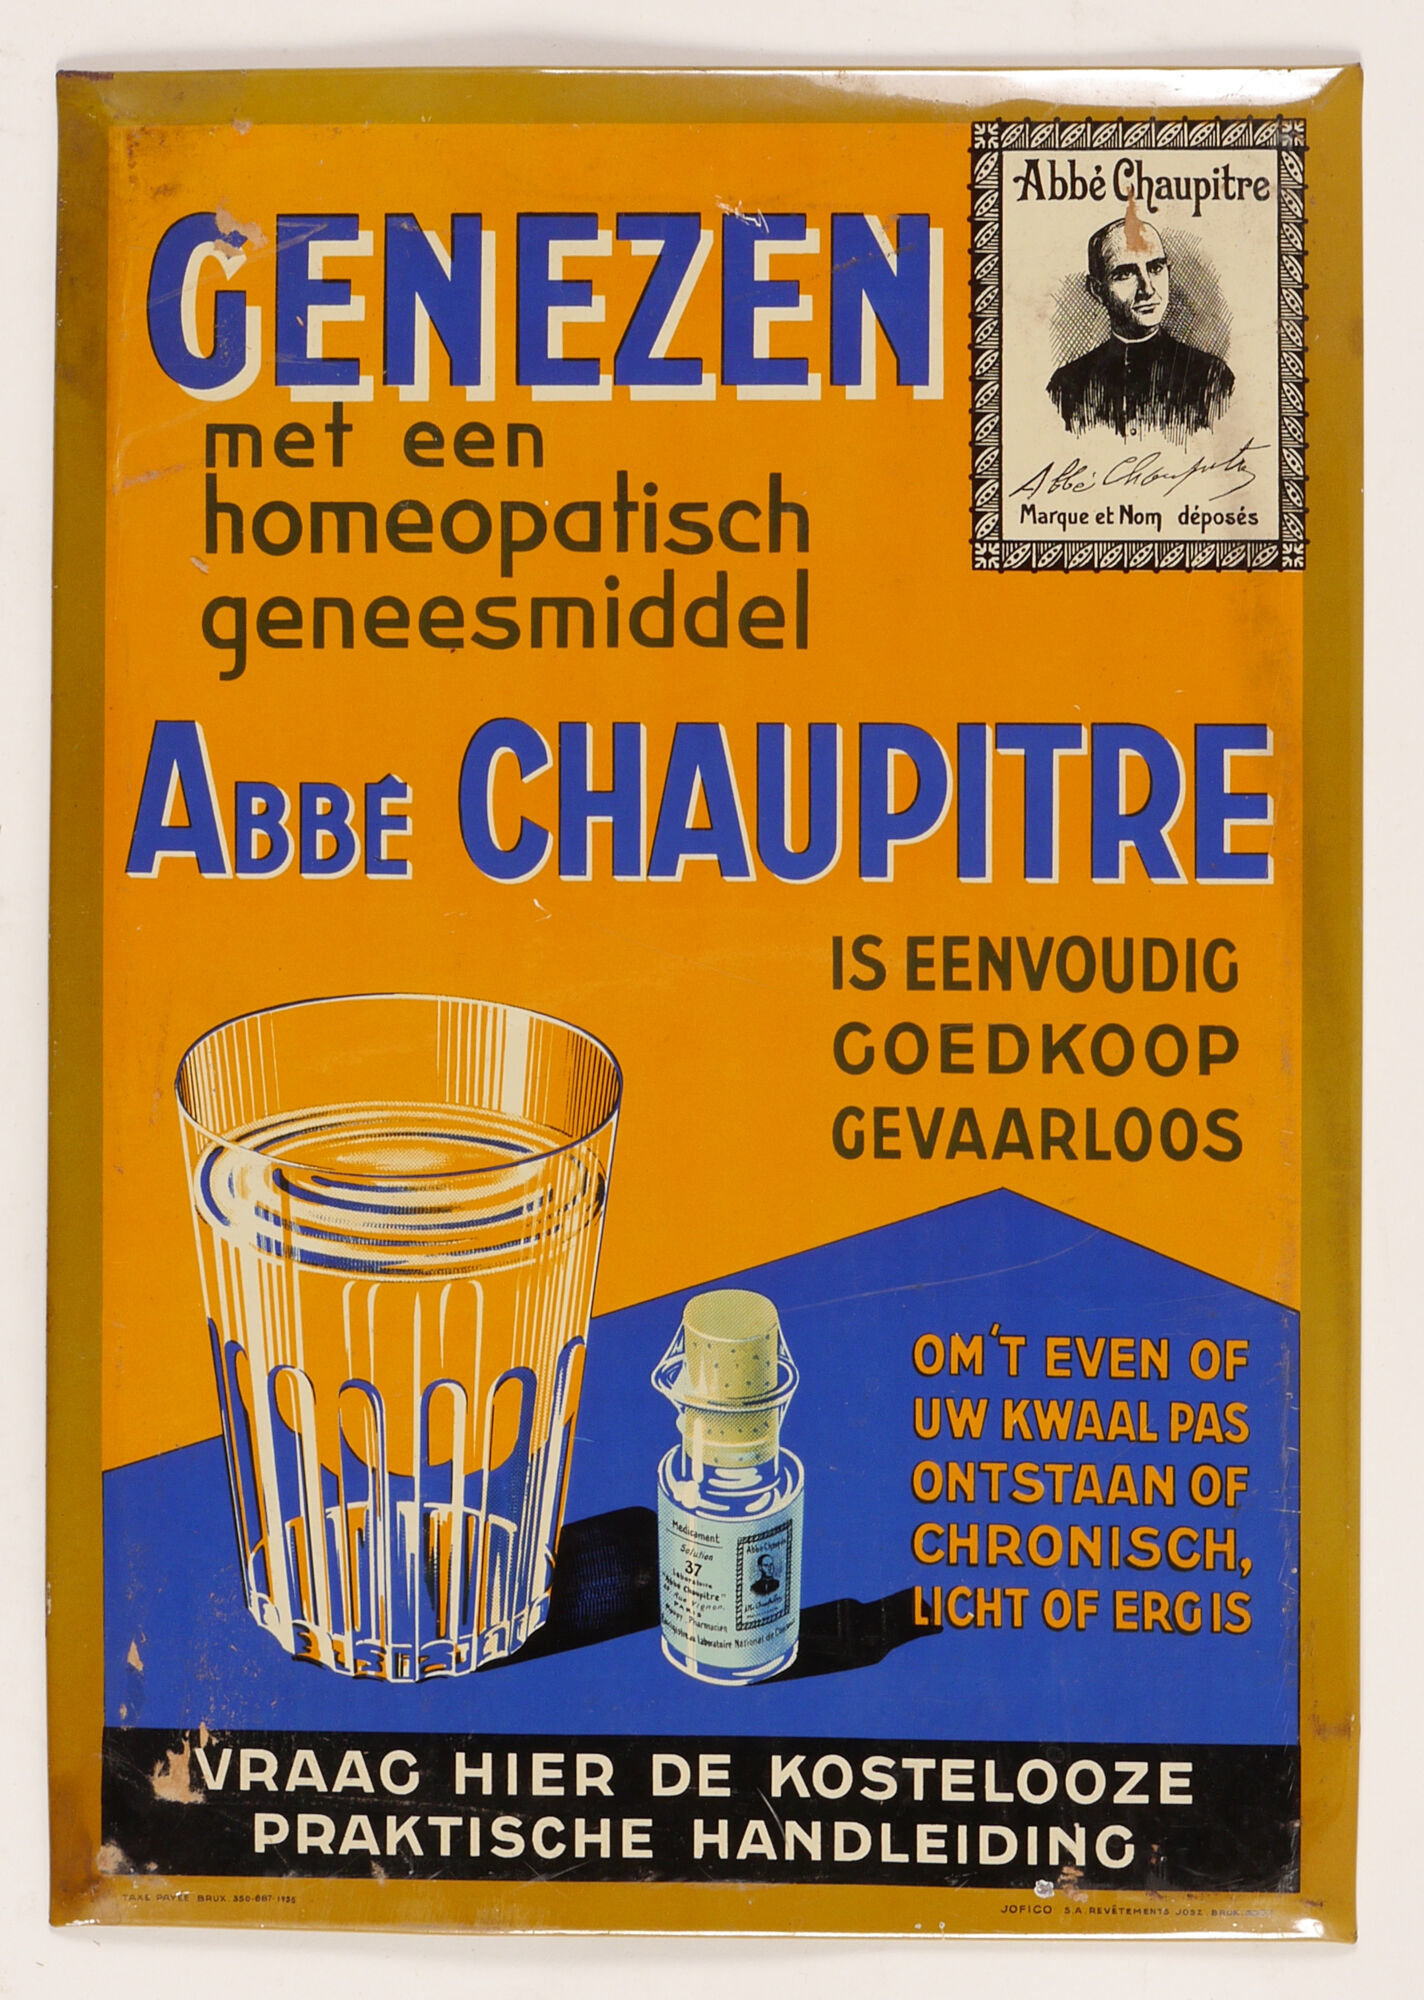 Reclamebord voor homeopatisch geneesmiddel van het merk Abbé Chaupitre